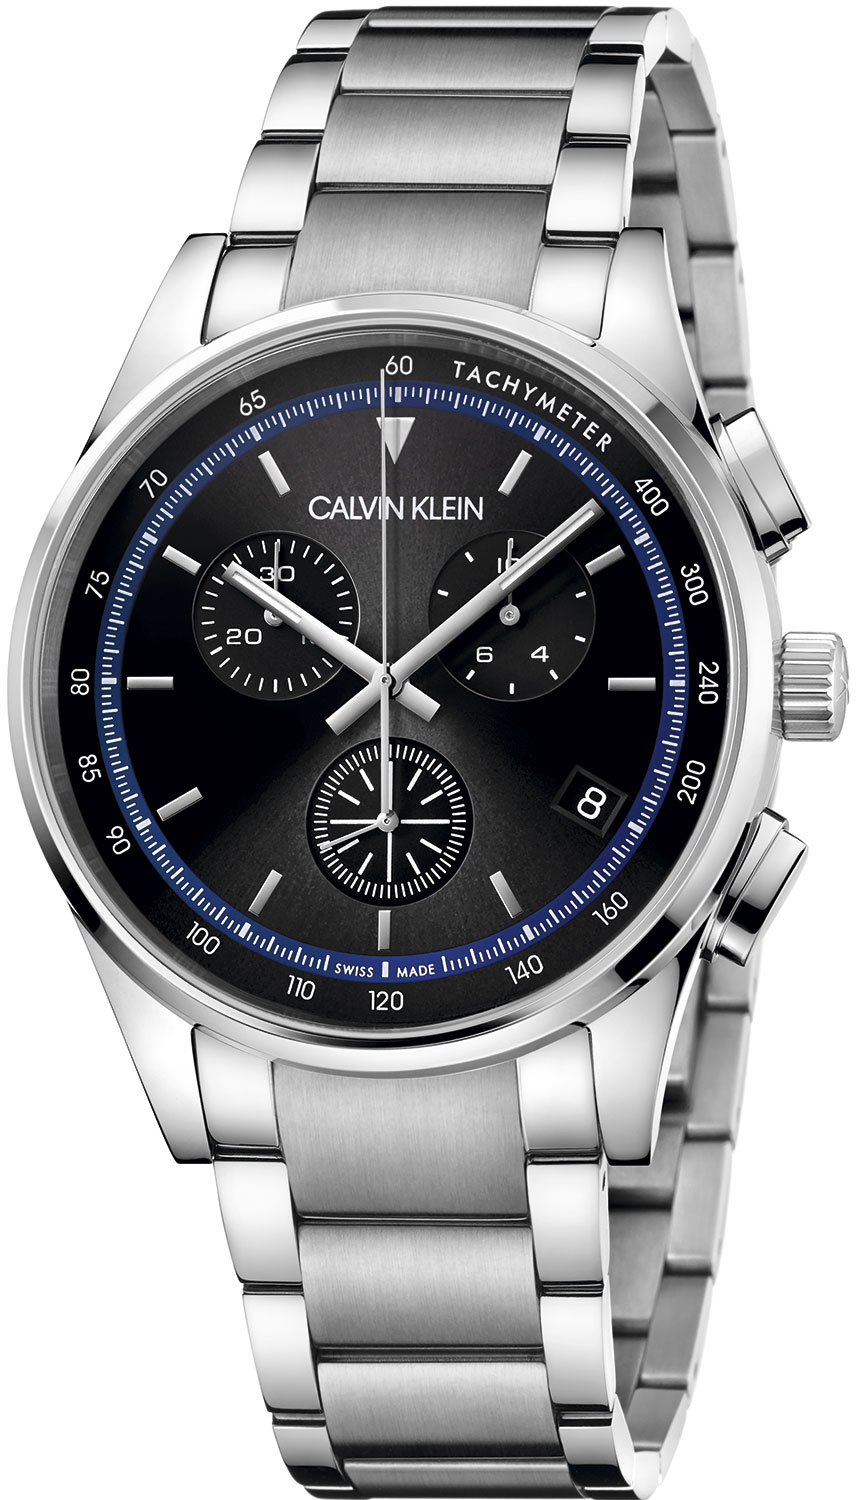 Швейцарские наручные часы Calvin Klein KAM27141 с хронографом